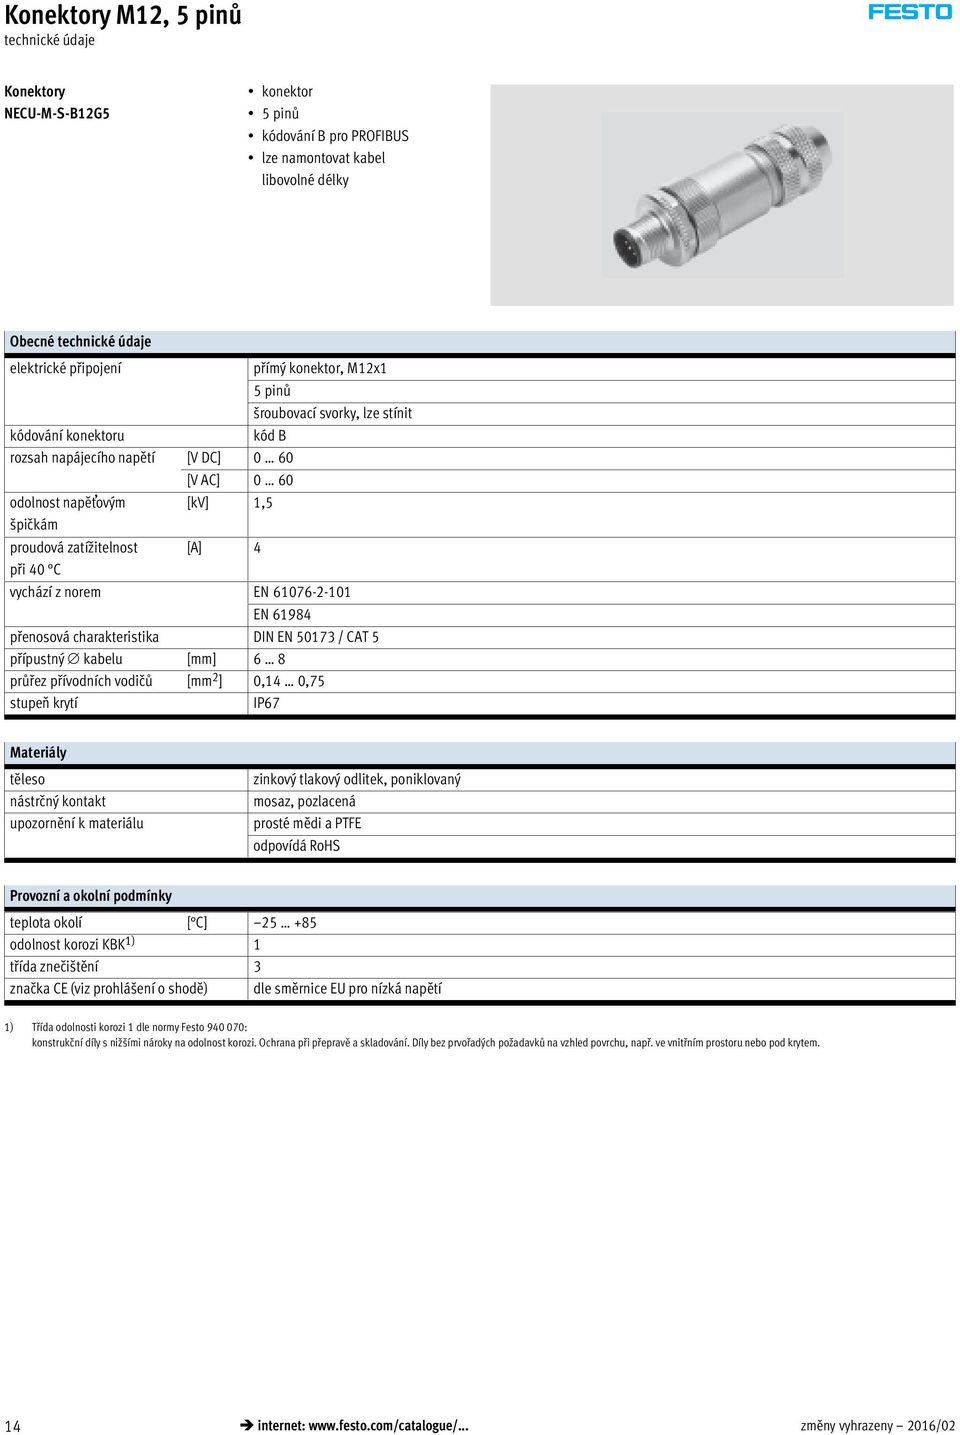 přenosová charakteristika DIN EN 50173 / CAT 5 přípustný kabelu [mm] 6 8 průřez přívodních vodičů [mm 2 ] 0,14 0,75 stupeň krytí IP67 Materiály těleso nástrčný kontakt upozornění k materiálu zinkový